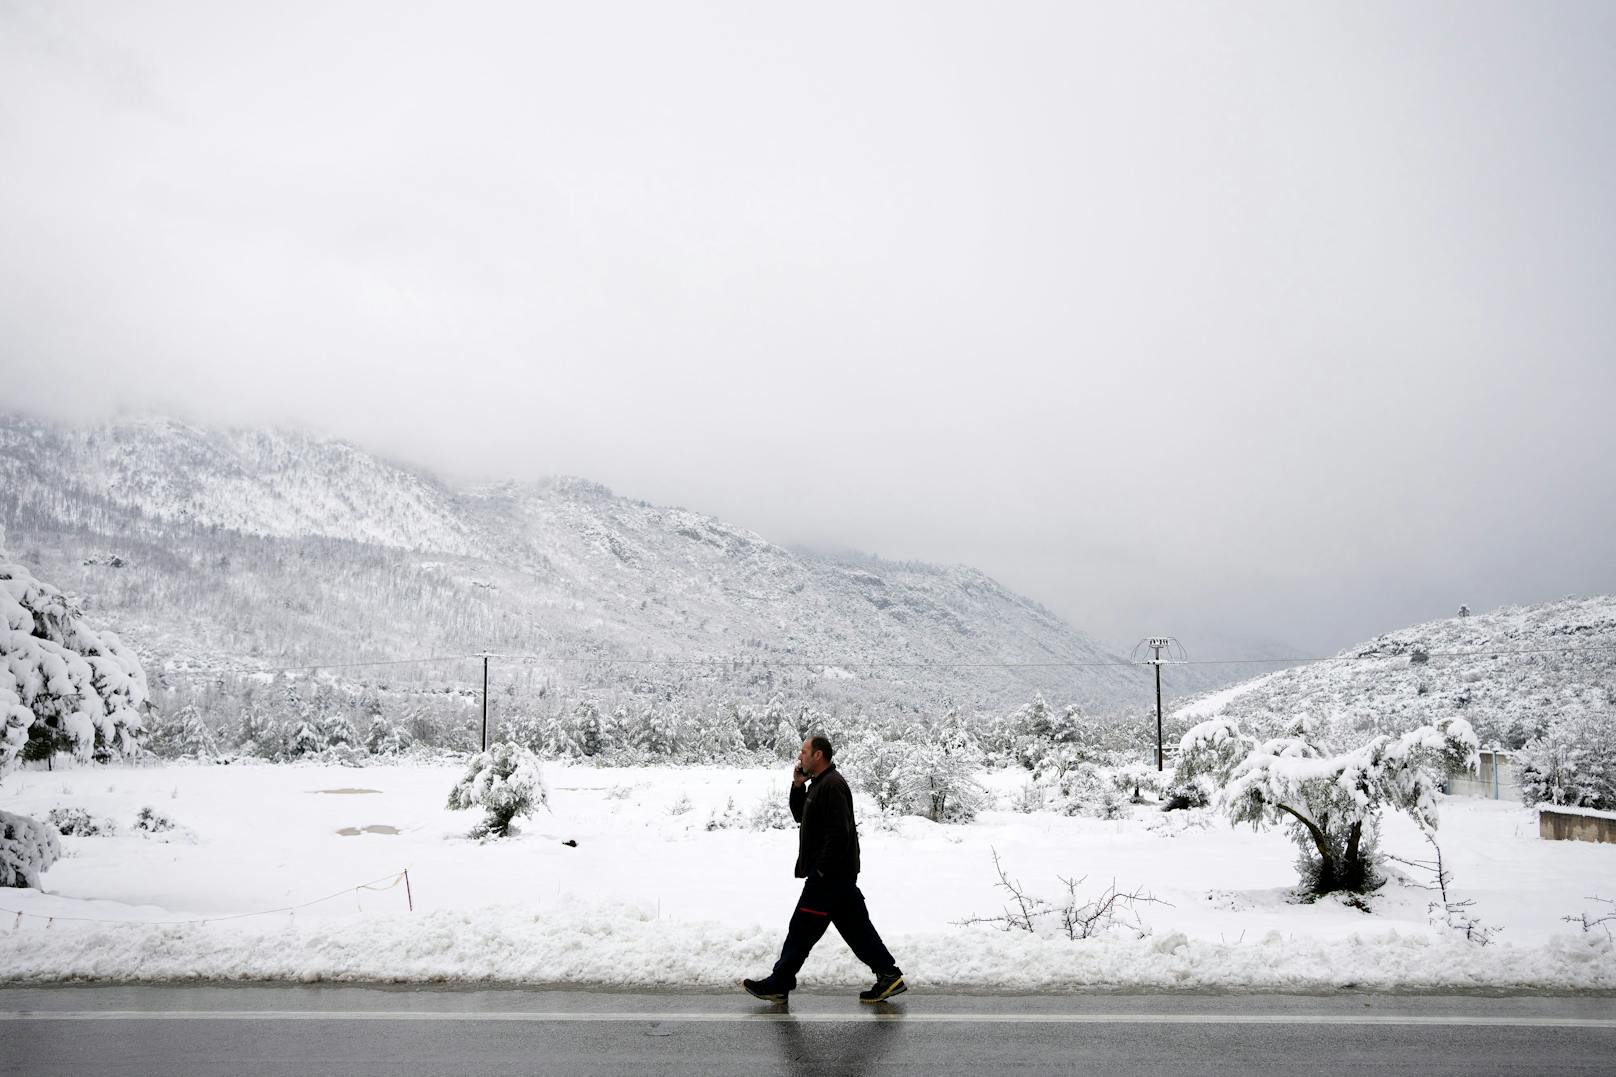 Die sonst so trockene Landschaft ist in dichtes weiß gehüllt. In der Ortschaft Malakasa wagt dieser Mann einen Spaziergang durch den Schnee.